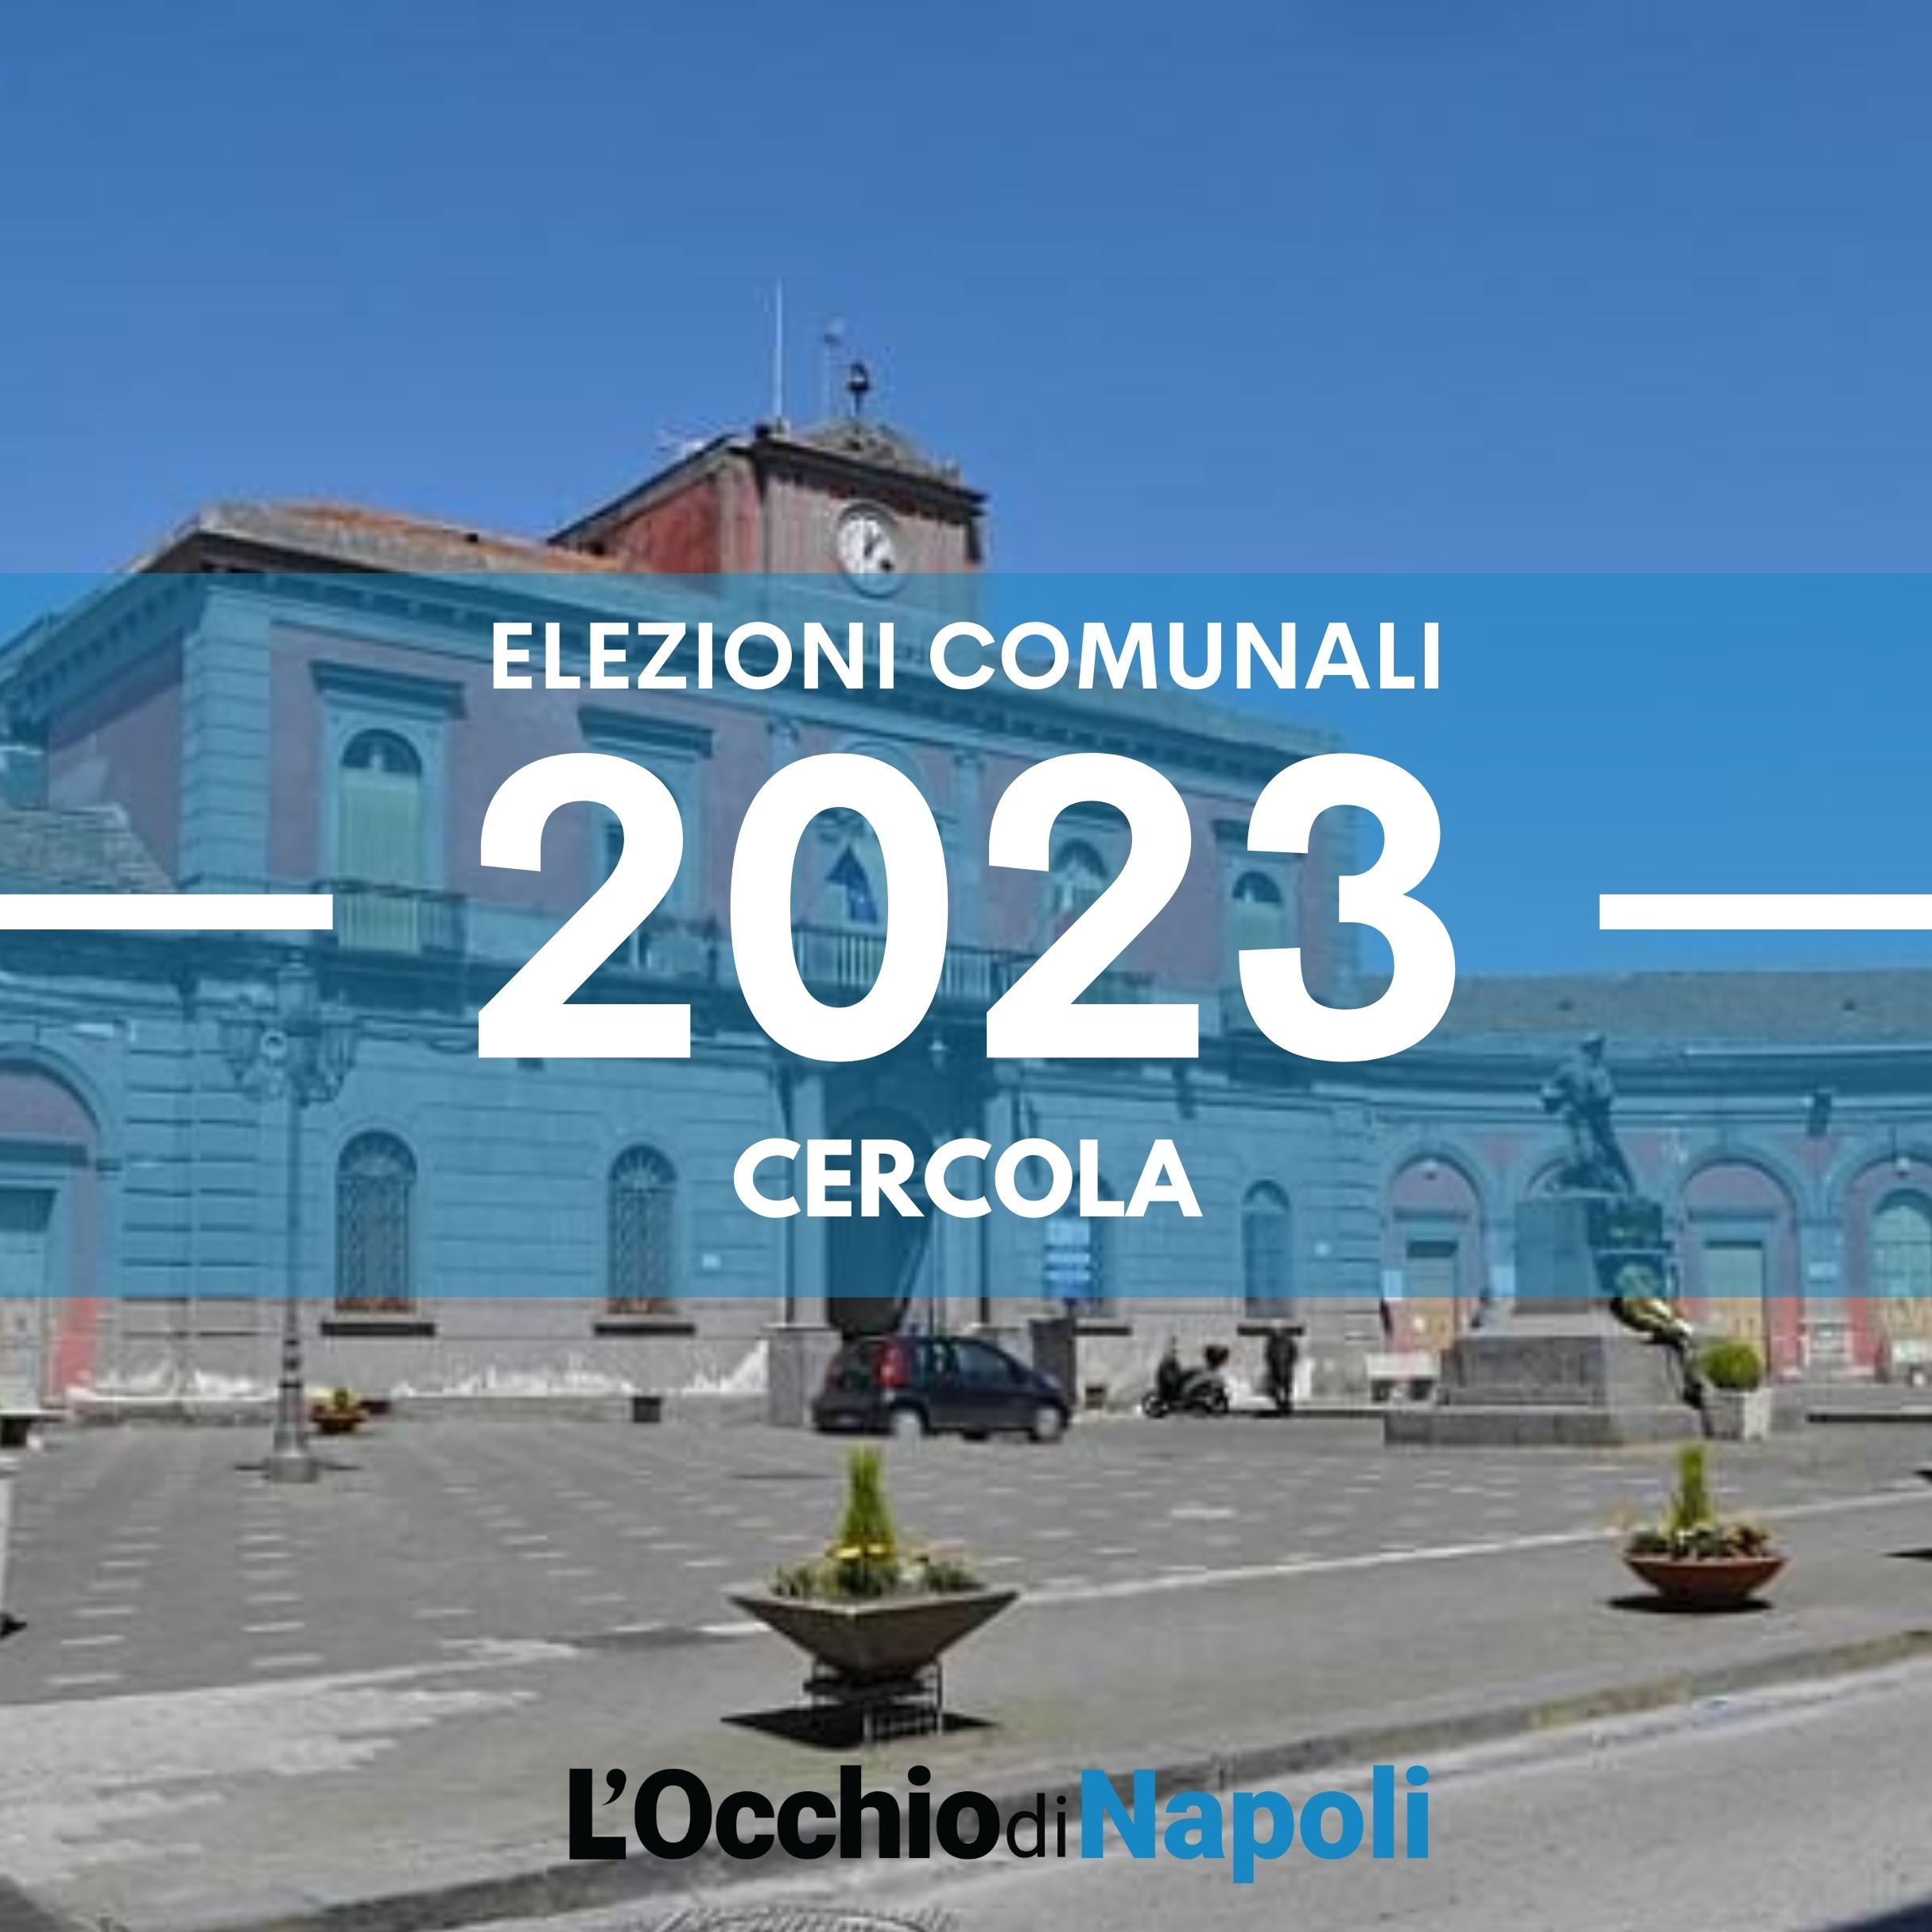 Elezioni comunali 2023 Cercola liste candidati